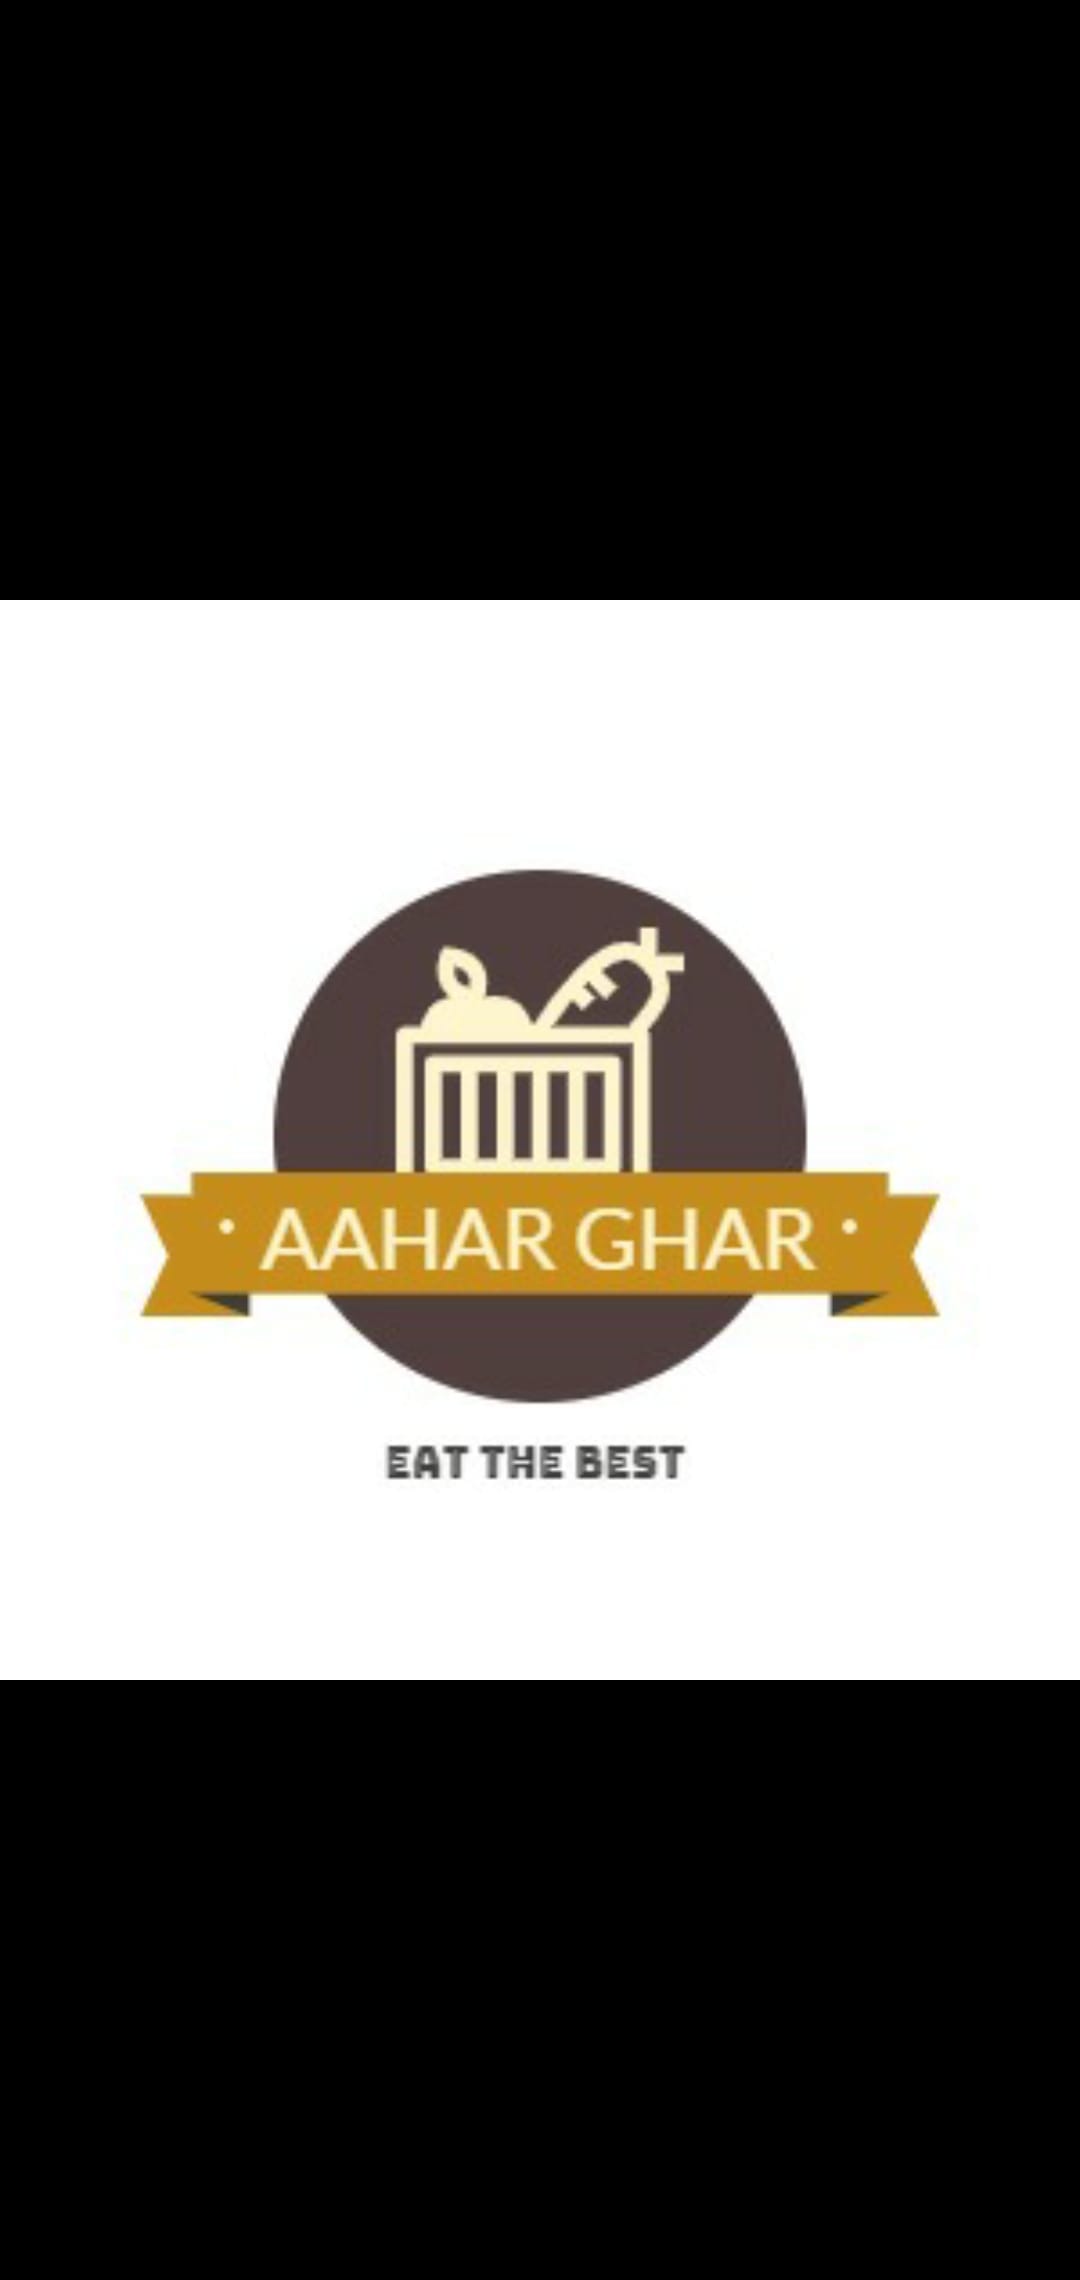 Aahar Ghar